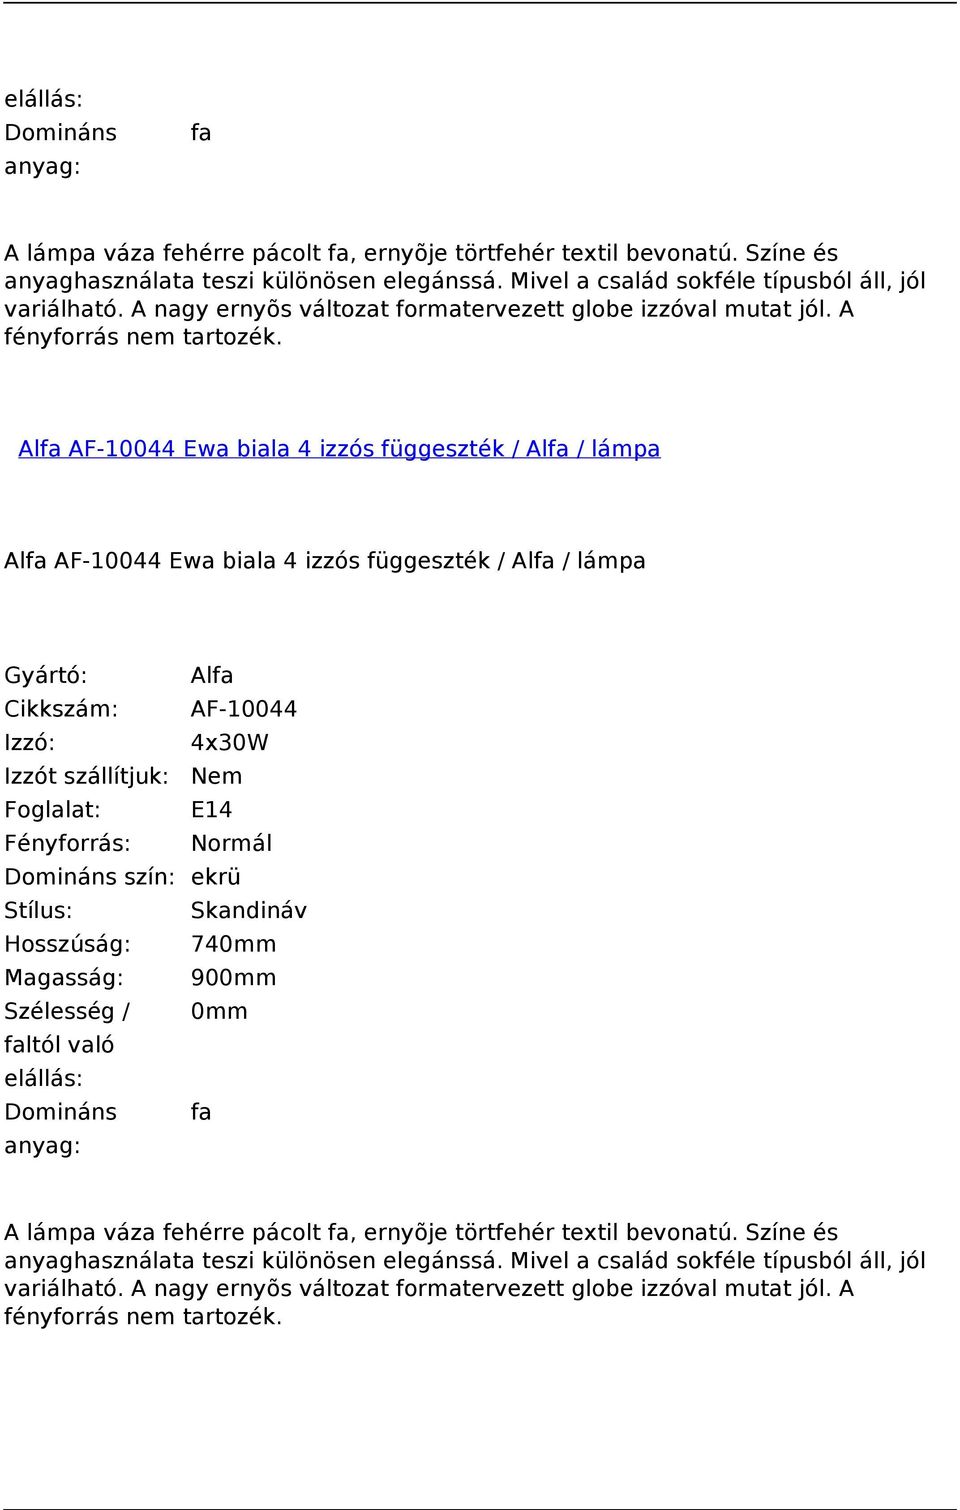 Alfa AF-10044 Ewa biala 4 izzós függeszték / Alfa / lámpa Alfa AF-10044 Ewa biala 4 izzós függeszték / Alfa / lámpa Cikkszám: AF-10044 Izzó: 4x30W Foglalat: E14 Domináns szín: ekrü Stílus: